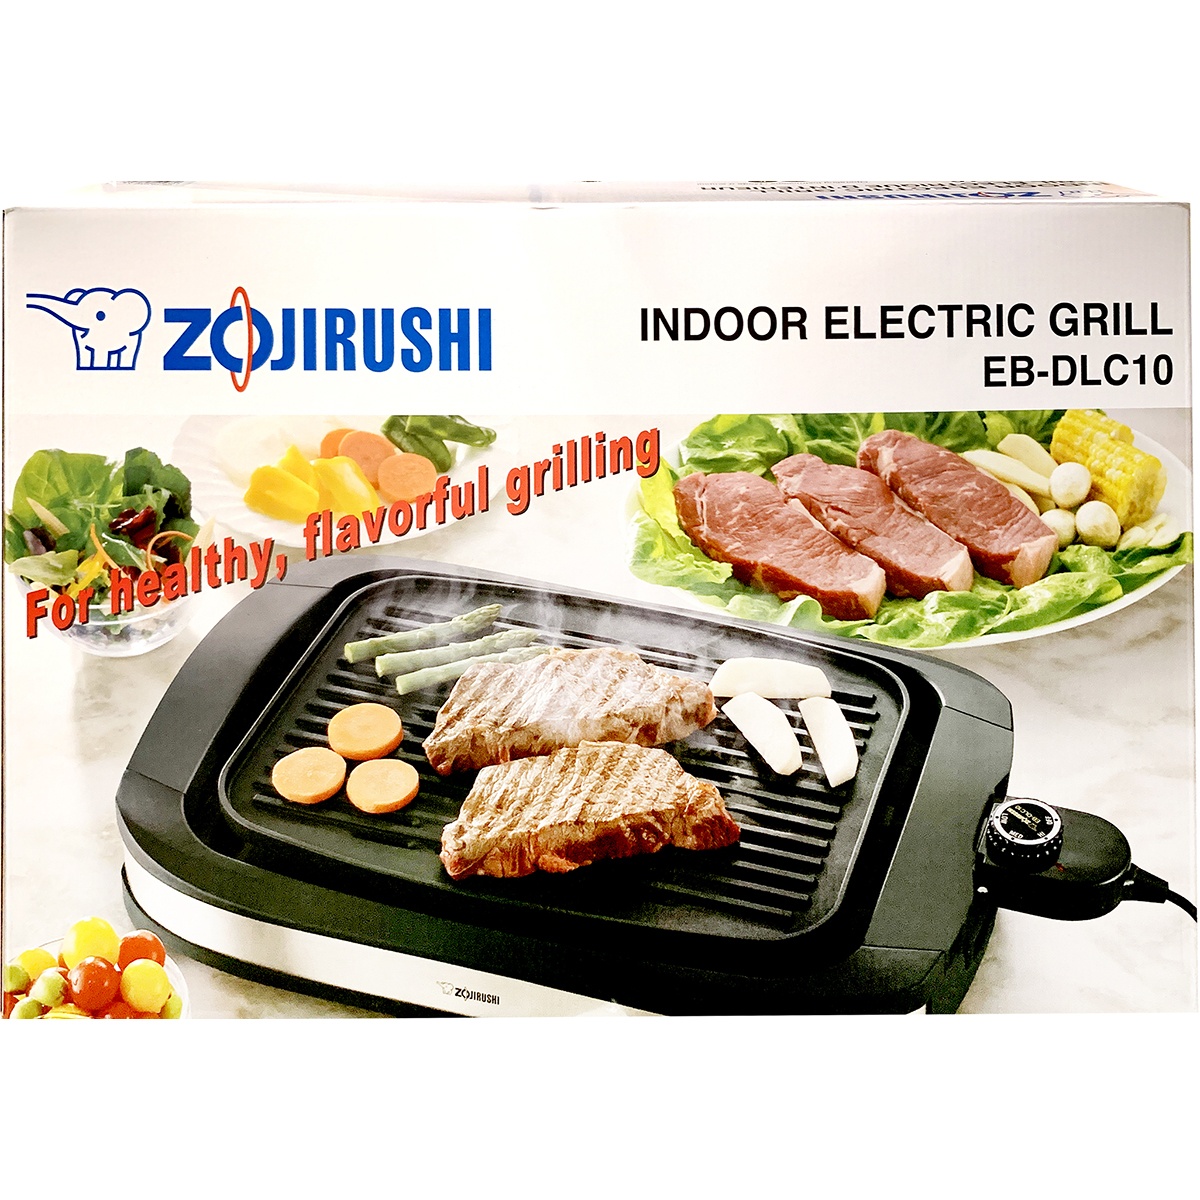 Zojirushi EB-DLC10 Indoor Electric Grill